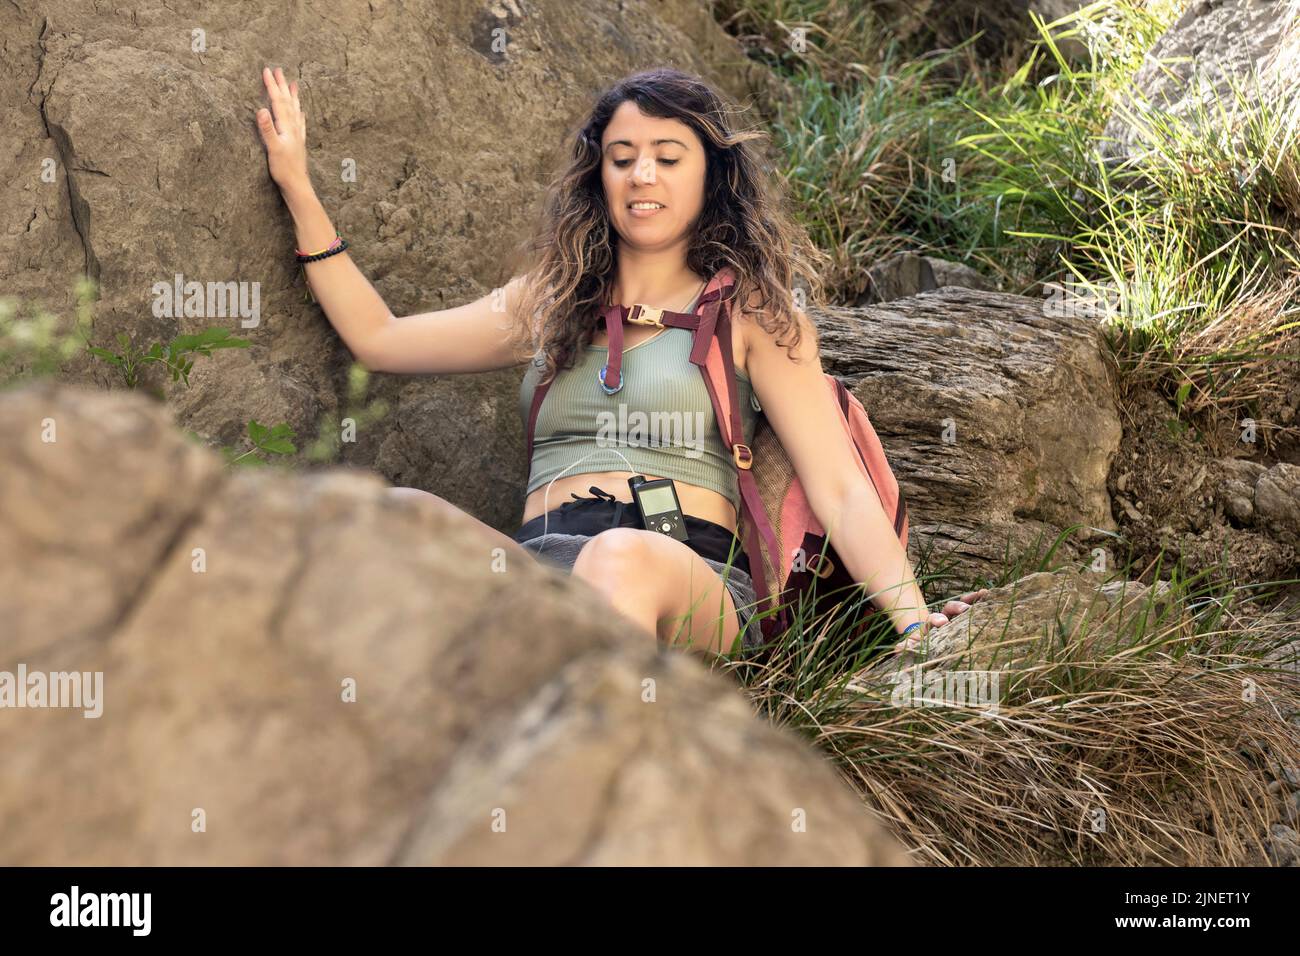 bruna donna che scende alcune rocce in montagna Foto Stock